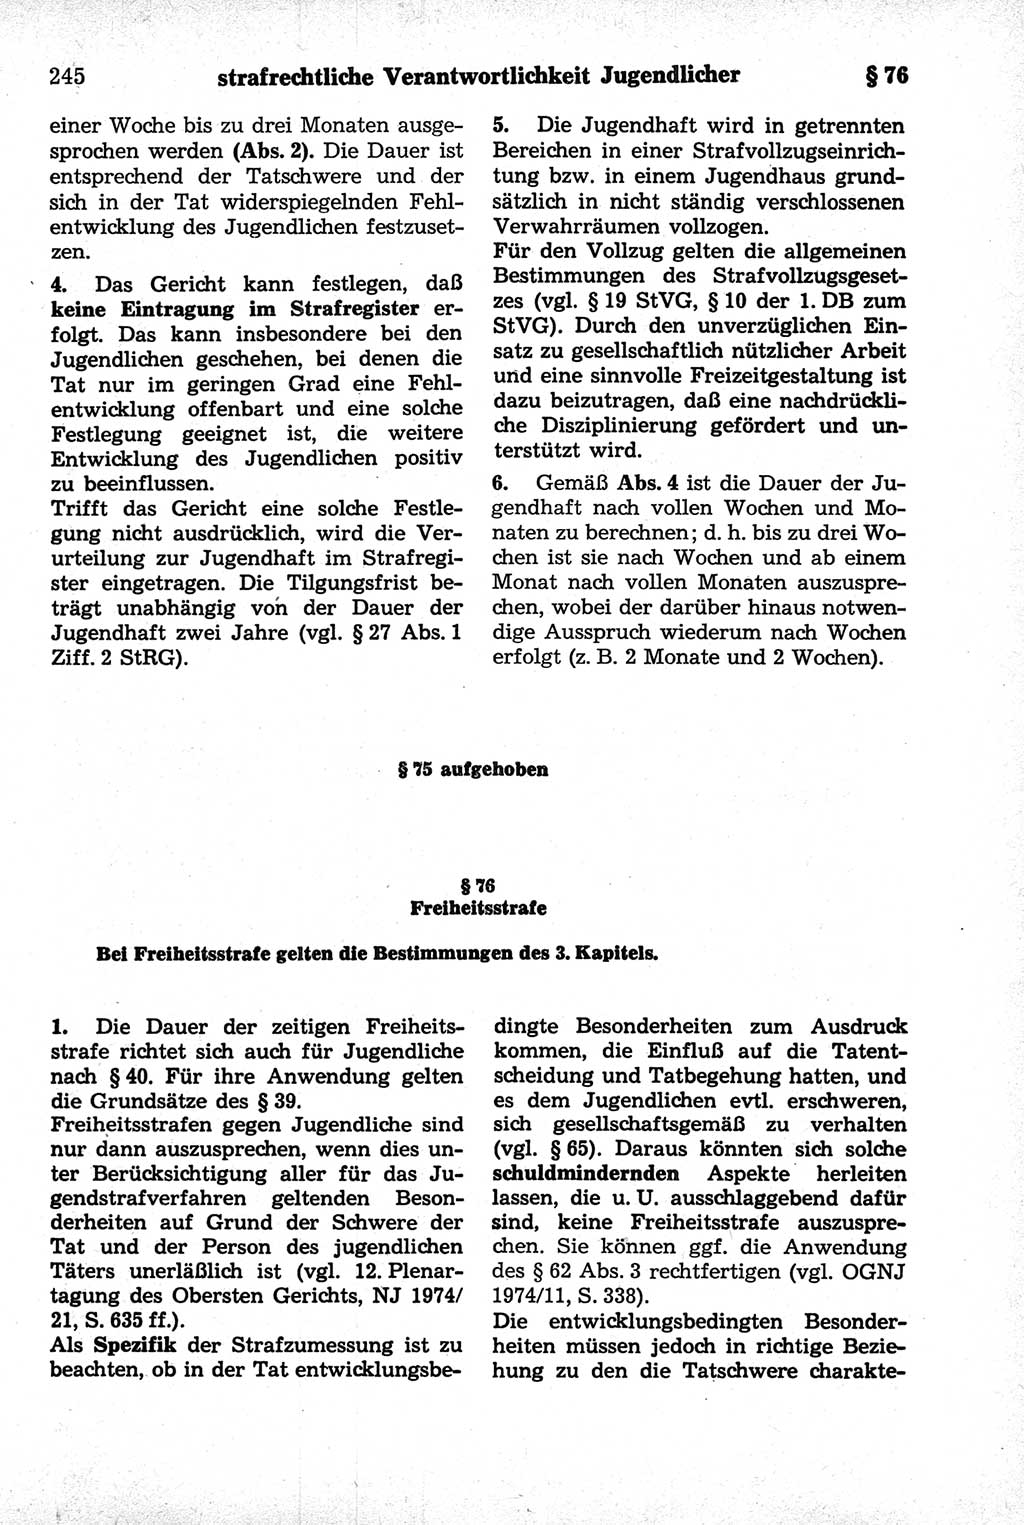 Strafrecht der Deutschen Demokratischen Republik (DDR), Kommentar zum Strafgesetzbuch (StGB) 1981, Seite 245 (Strafr. DDR Komm. StGB 1981, S. 245)